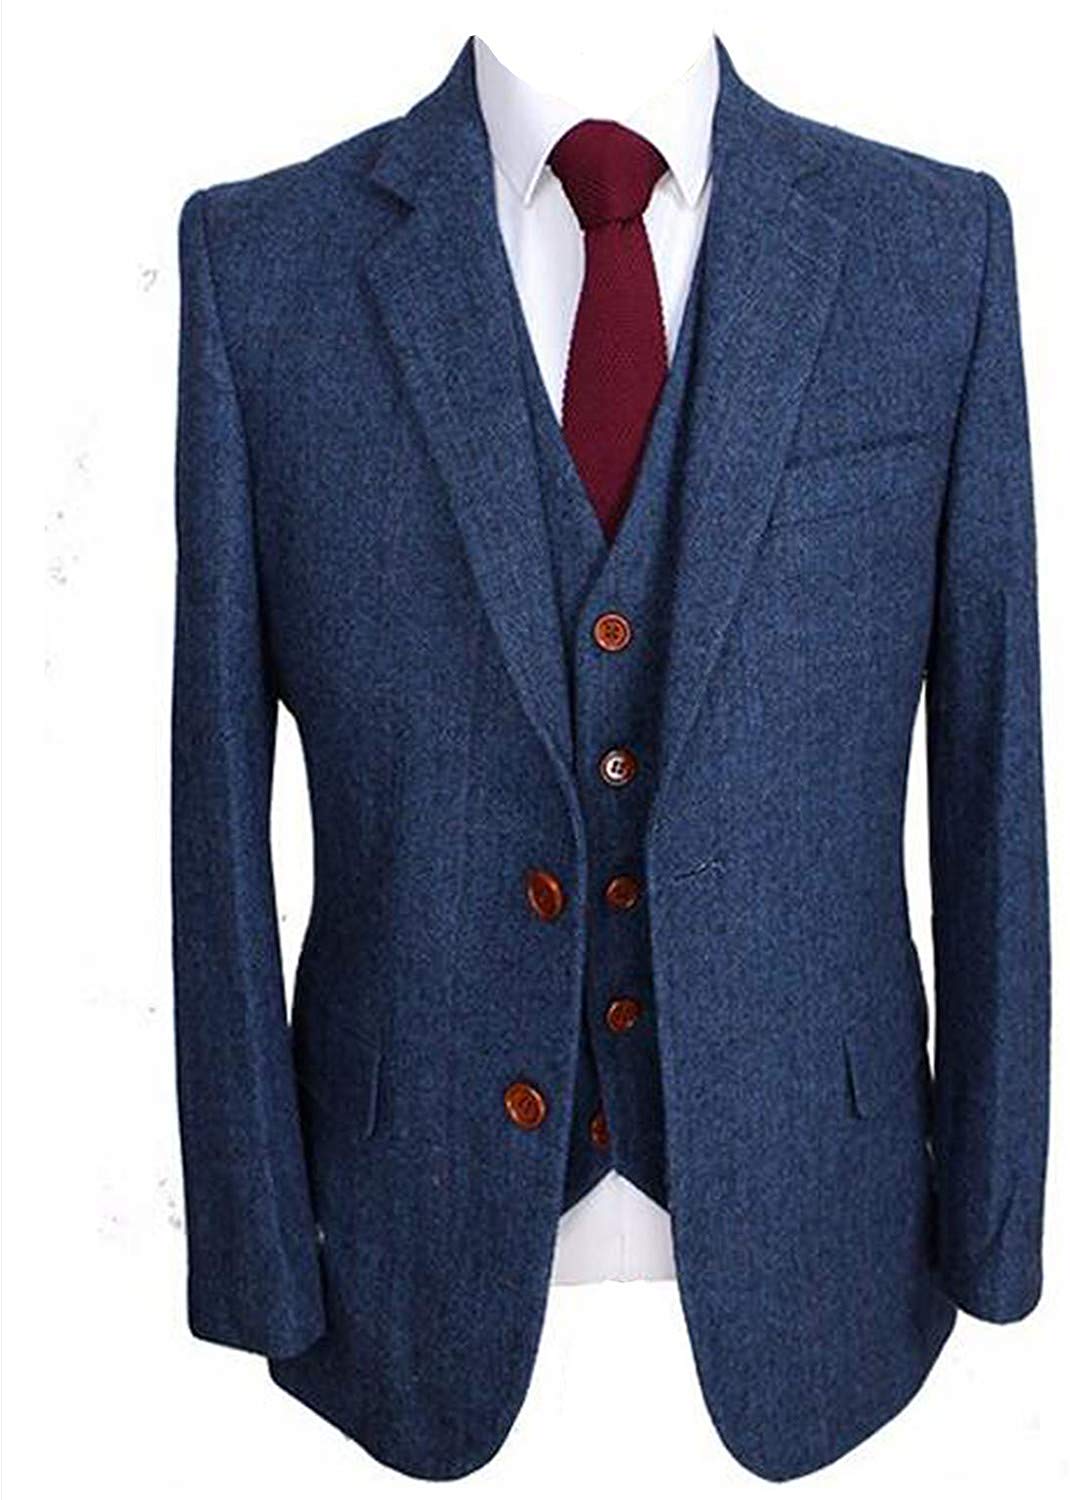 13th wedding anniversary gift for husband-Men's Slim Fit Notched Lapel Suit Blazer Jacket Tux Vest & Trousers 3-Piece Suit Set